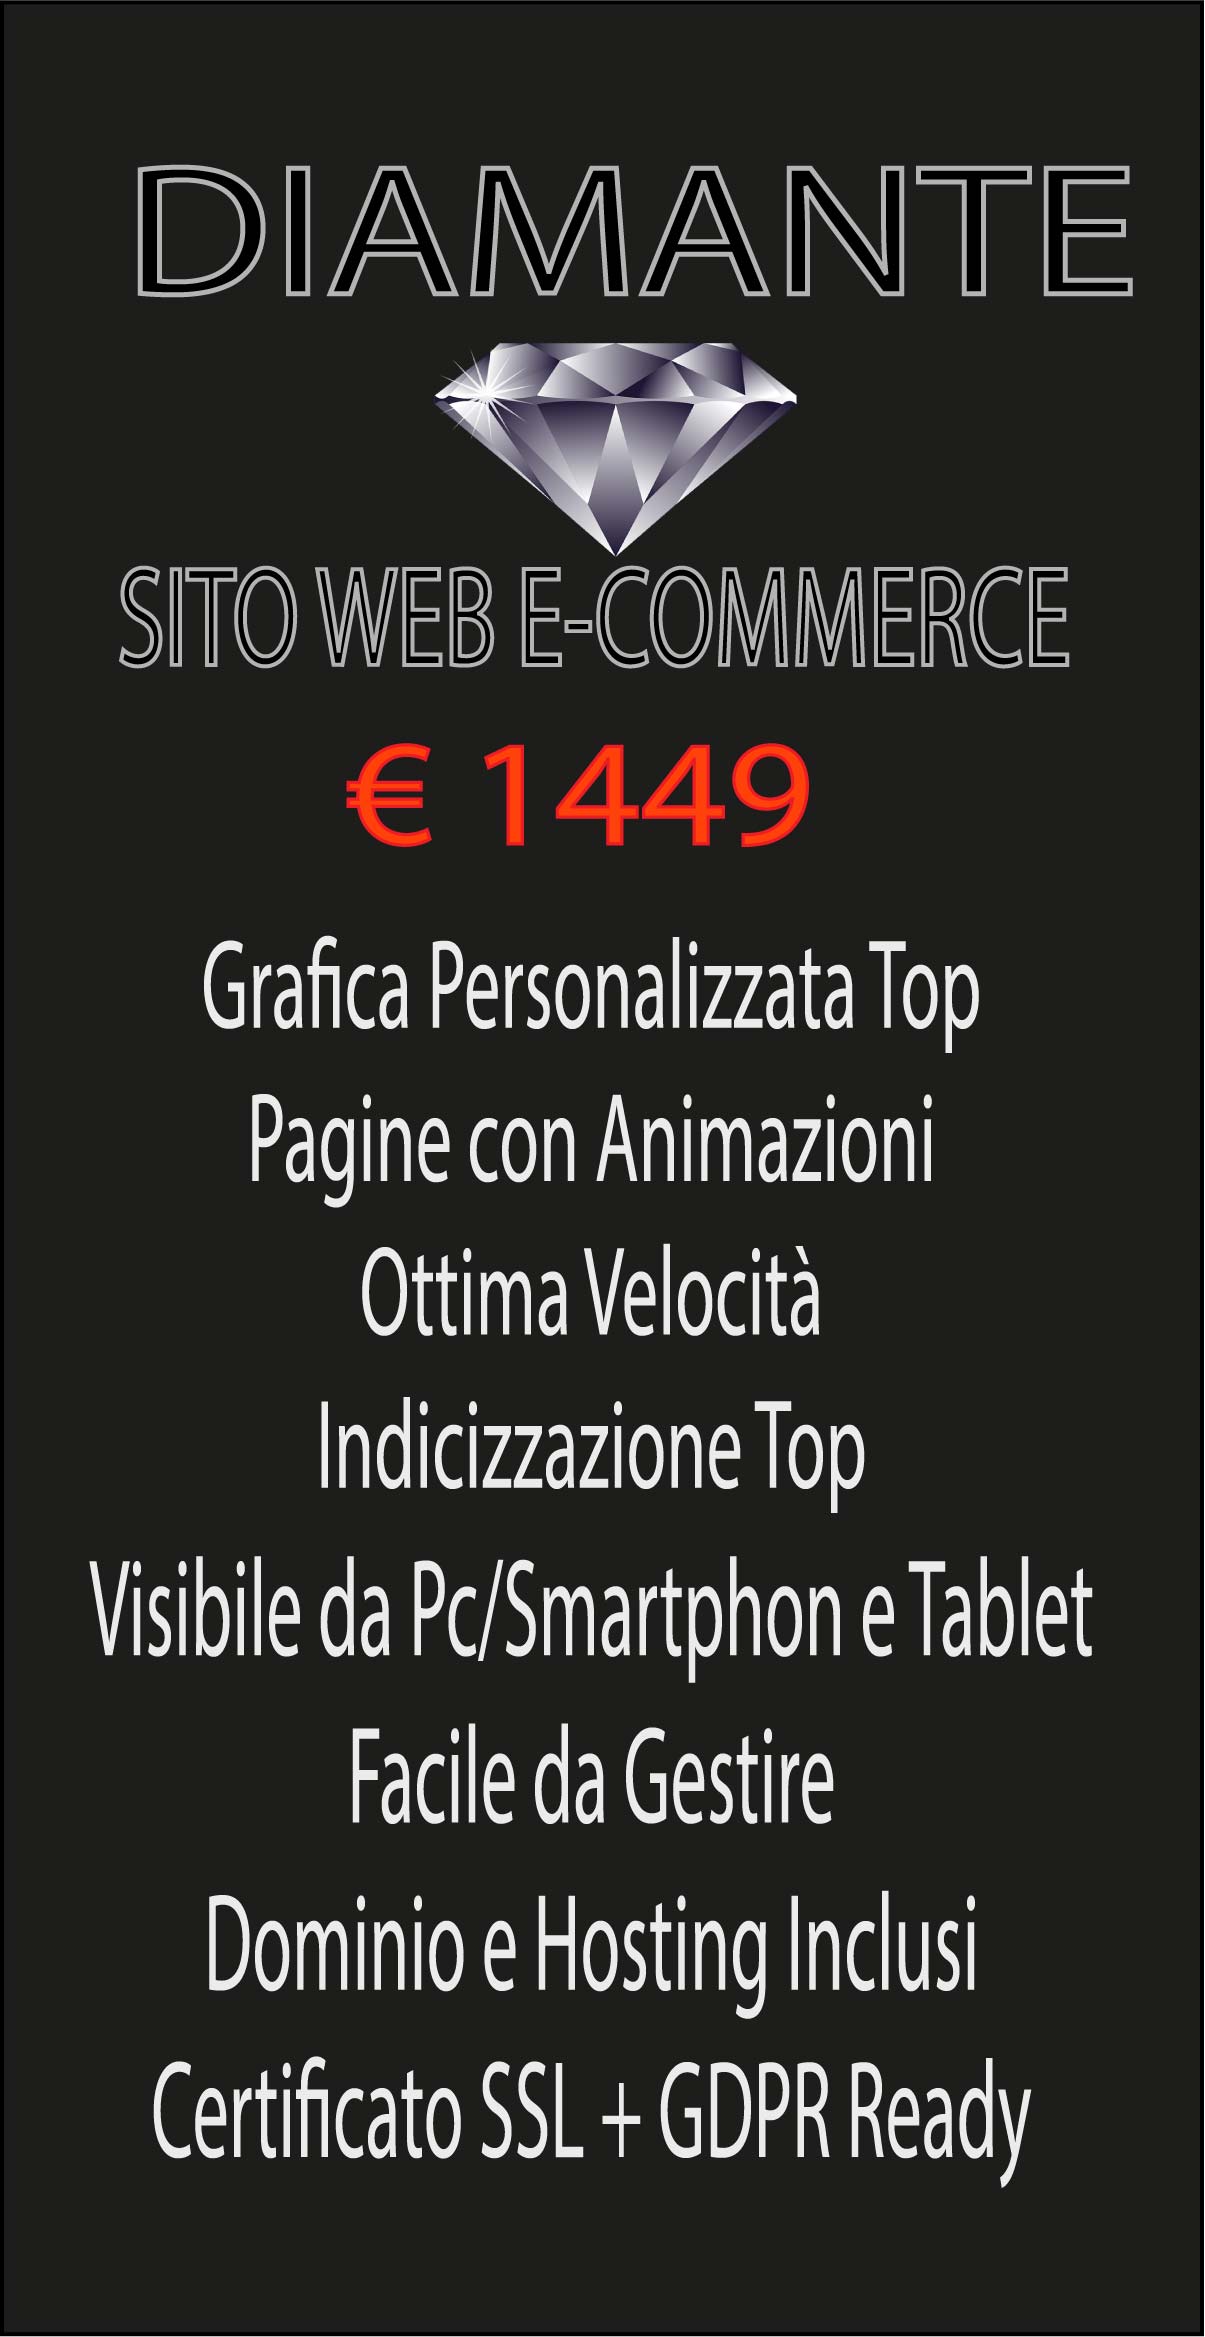 SITO WEB E-COMMERCE-DIAMANTE